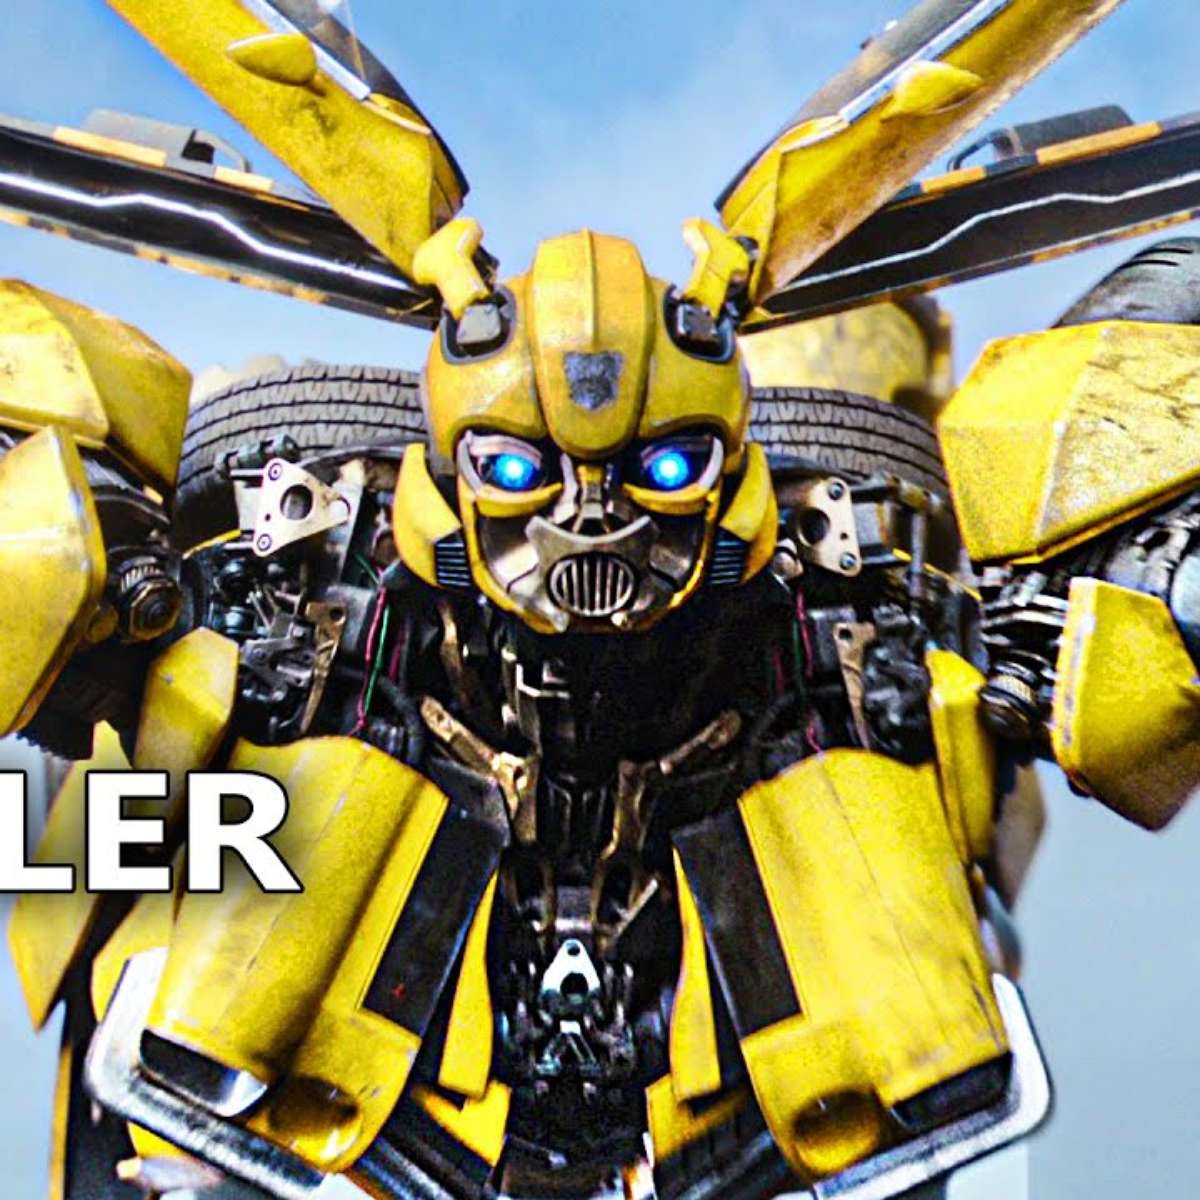 A Ordem Cronológica dos Filmes Transformers: Um Guia Completo - Itajaí  Shopping